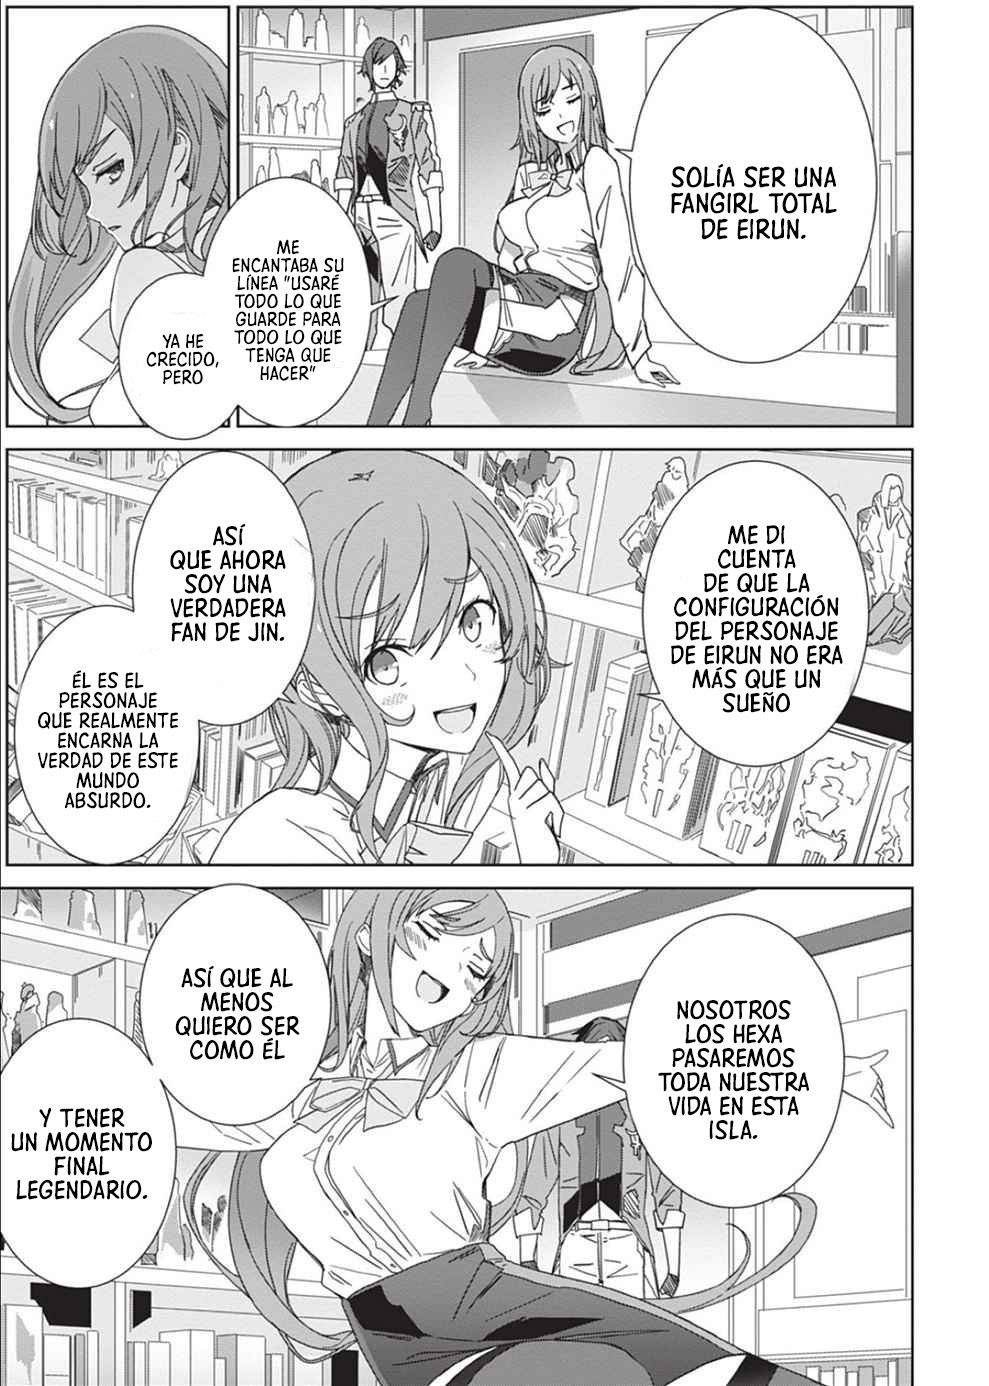 Manga EIRUN LAST CODE Chapter 2 image number 11